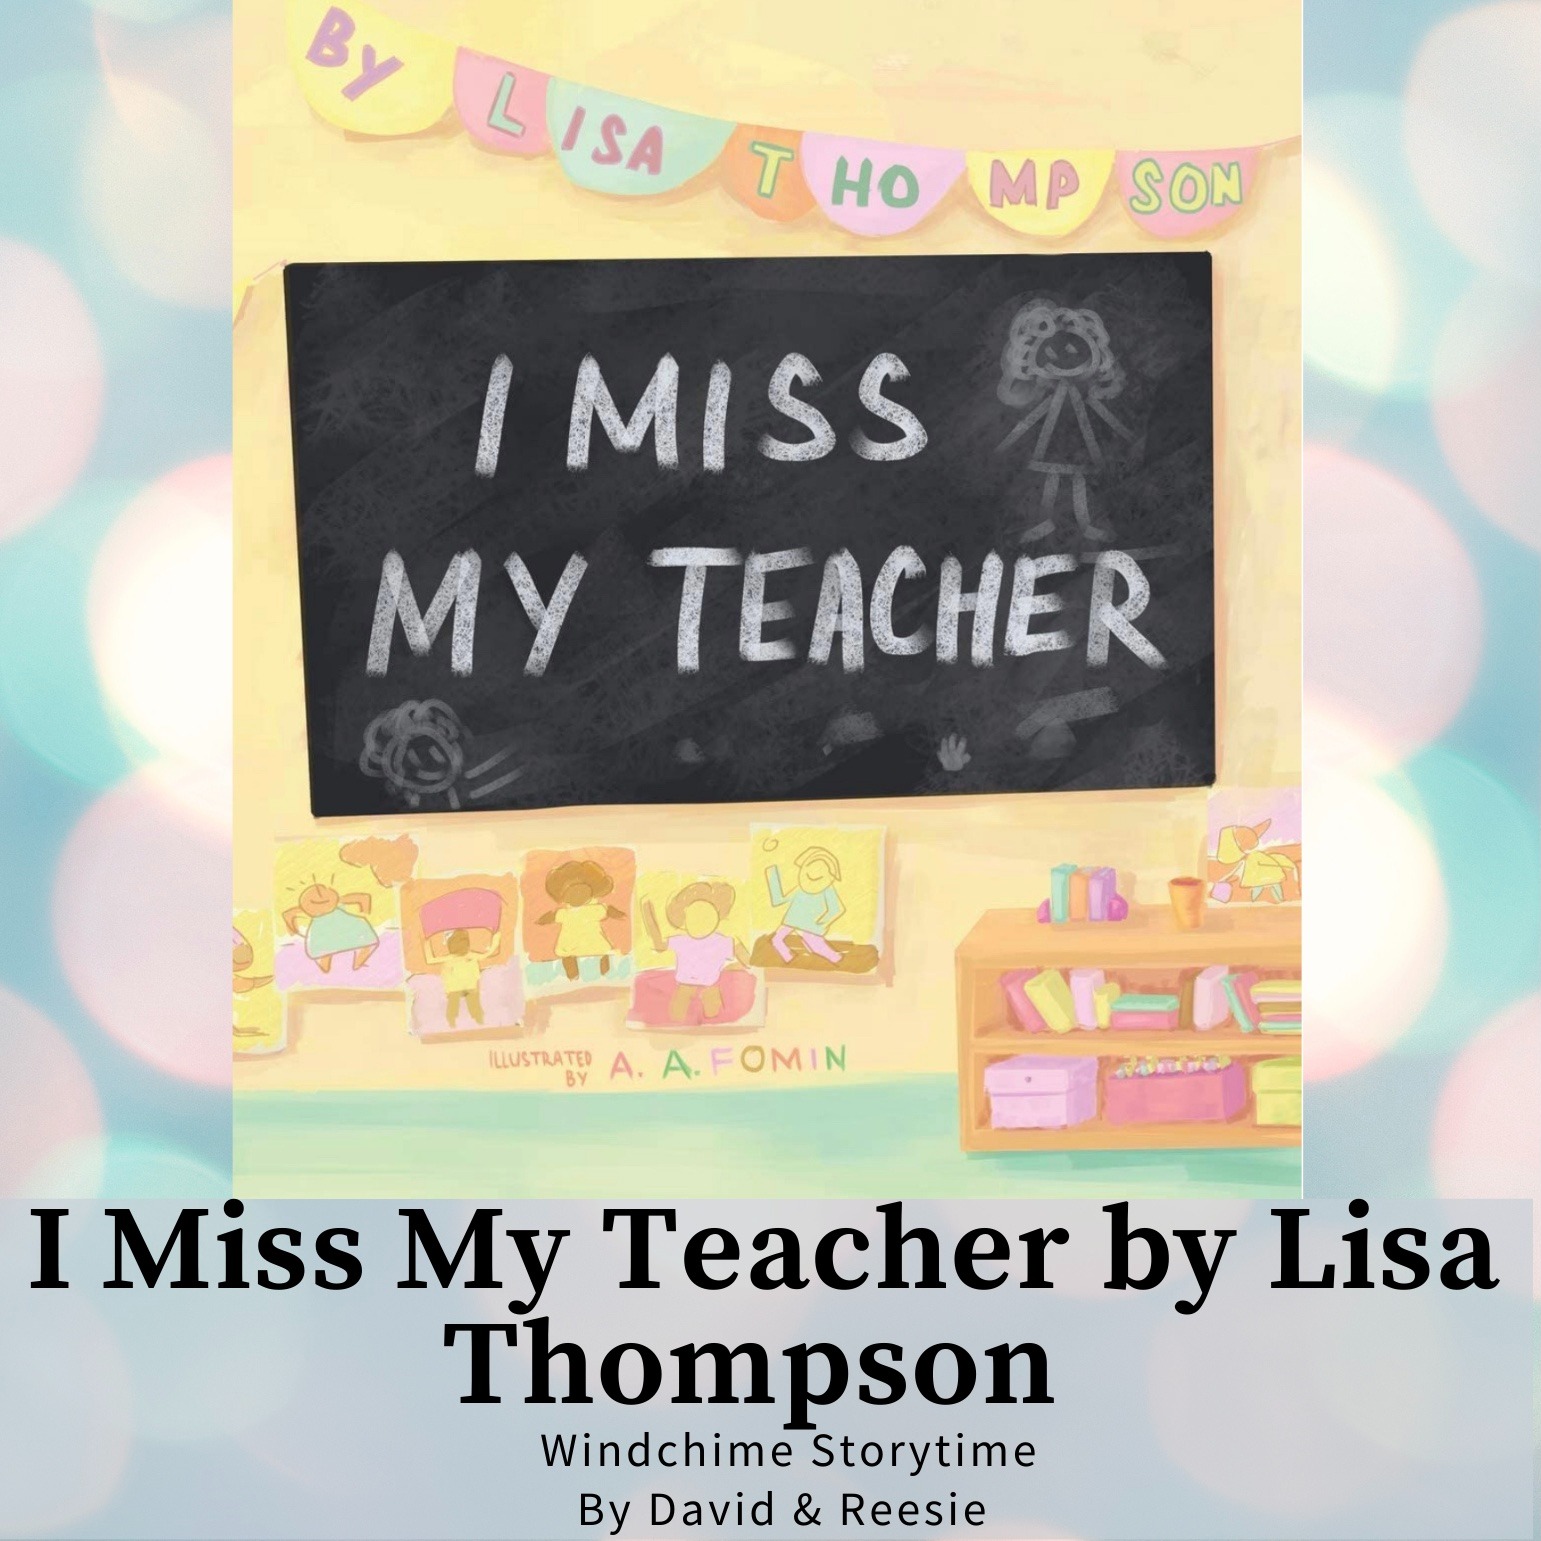 20 - I Miss My Teacher by Lisa Thompson